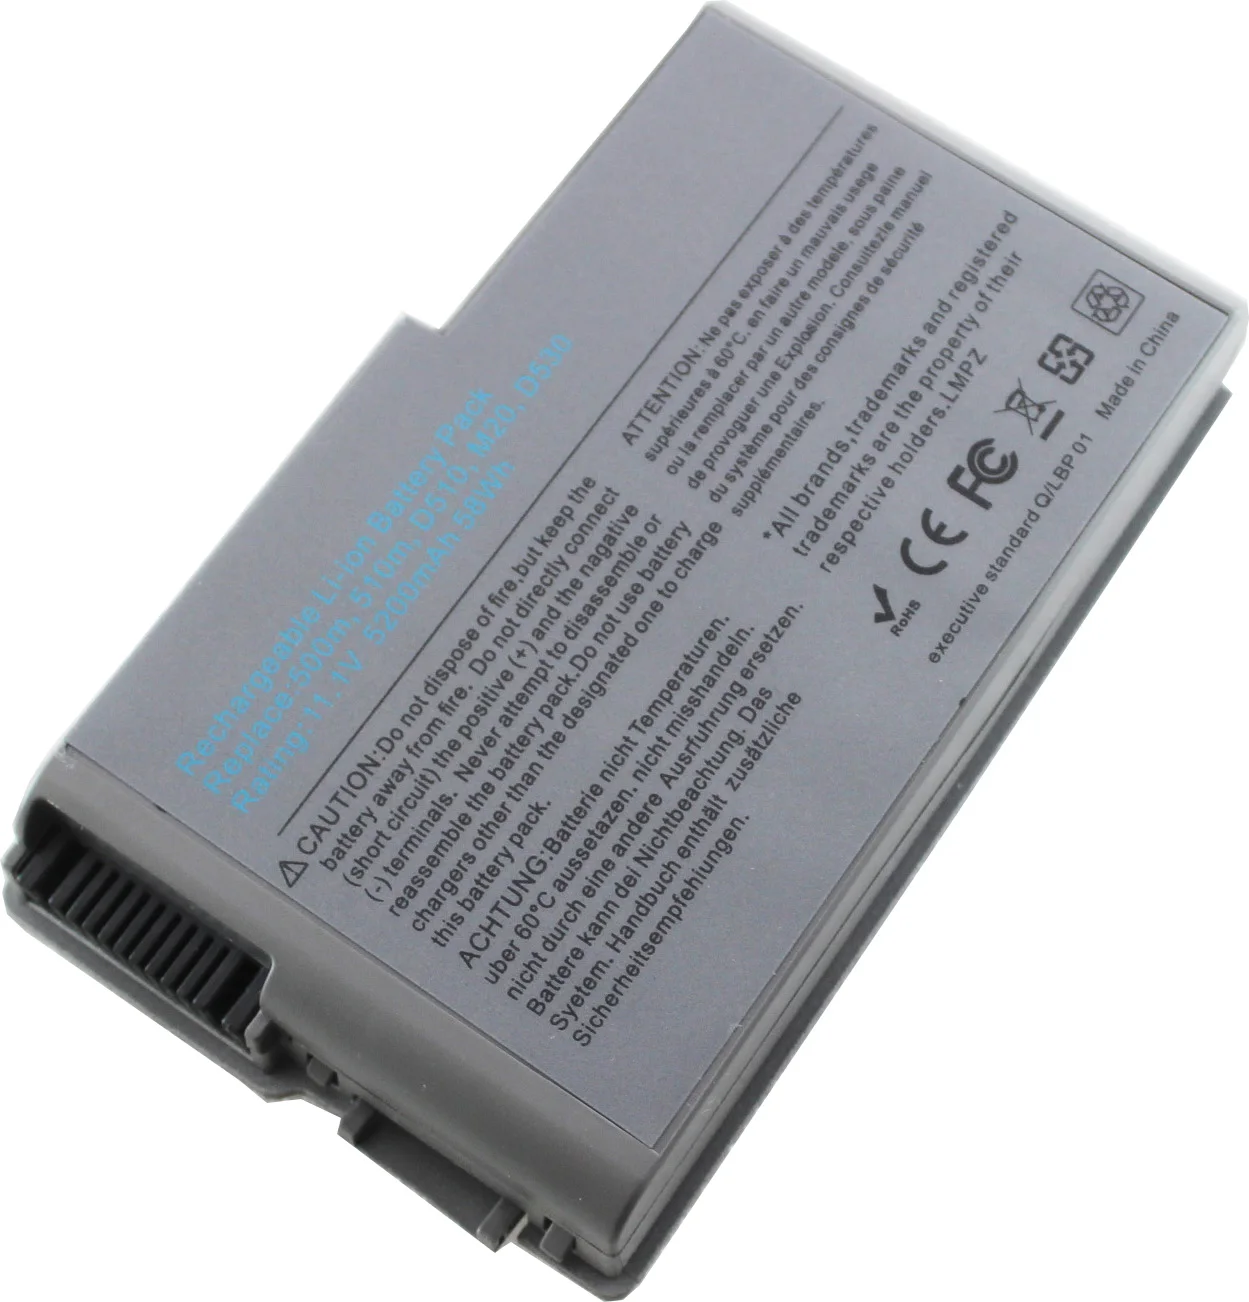 HUAHERO Bateriei pentru Dell Latitude D520 D500 D600 D610 D530 D505 D510 Inspiron 500m 510m, 600m C1295 312-0090 451-10133 9X821 PC